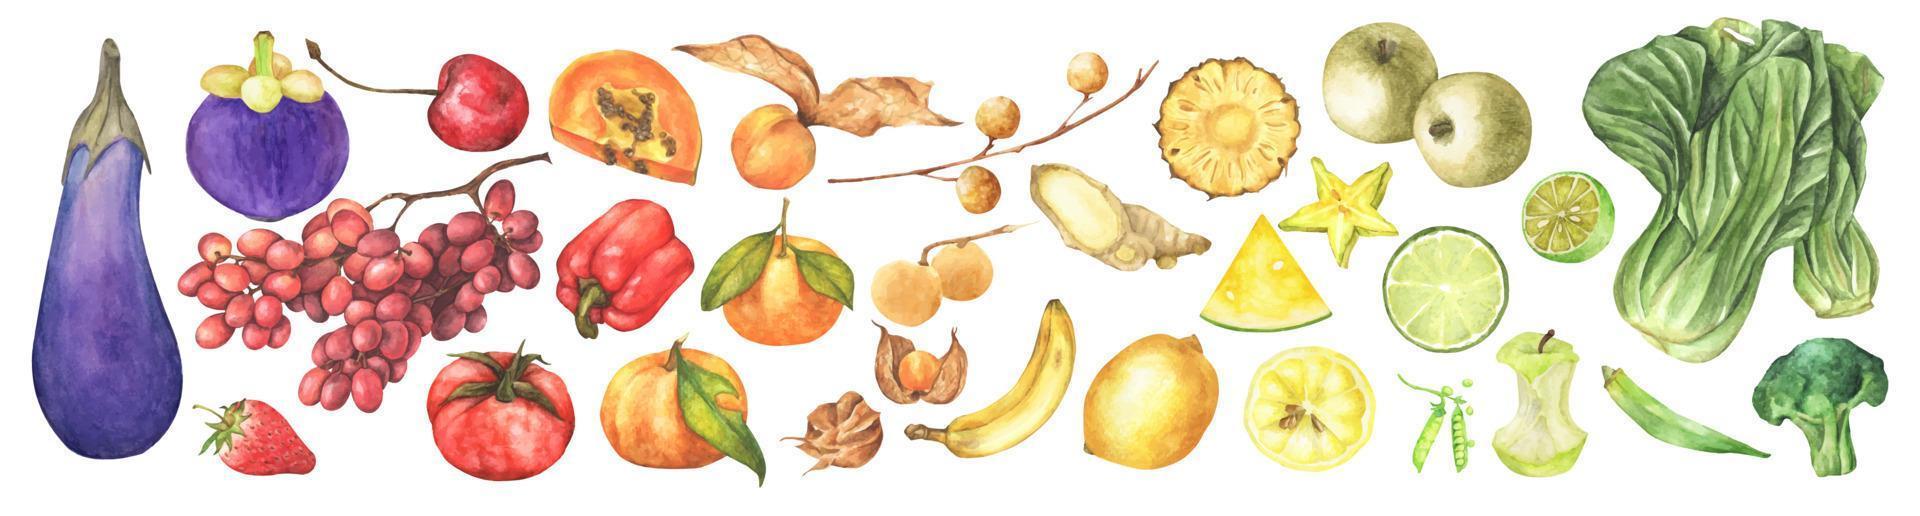 verdura fresca, frutta e superfood. illustrazione ad acquerello. vettore